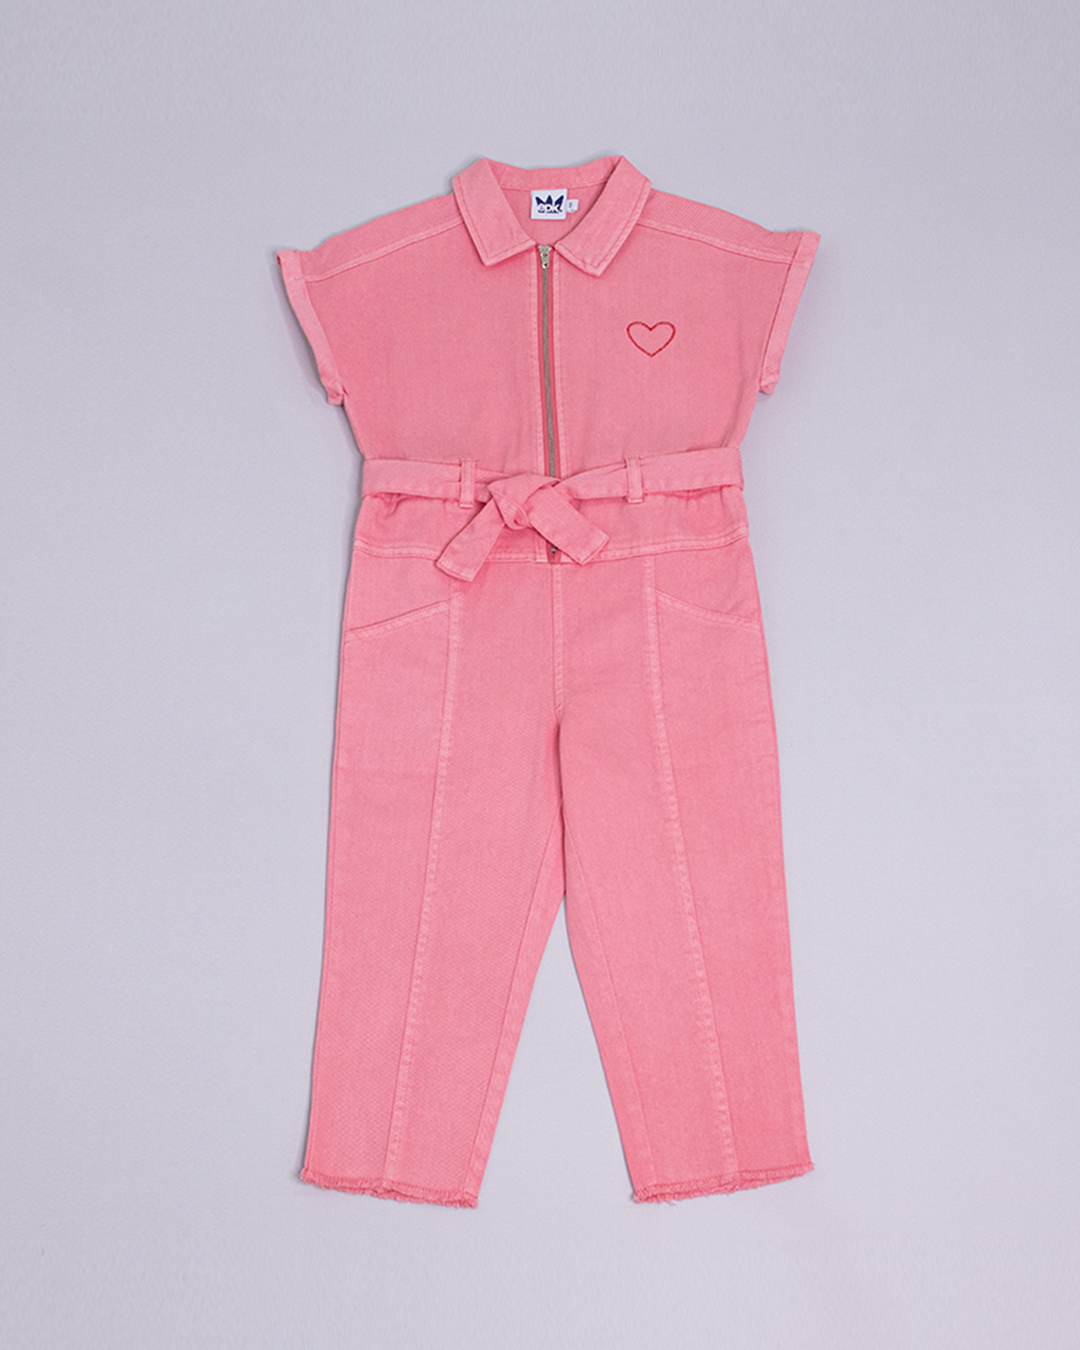 Braga larga de color rosado con un cinturón de la misma tela y un corazón bordado